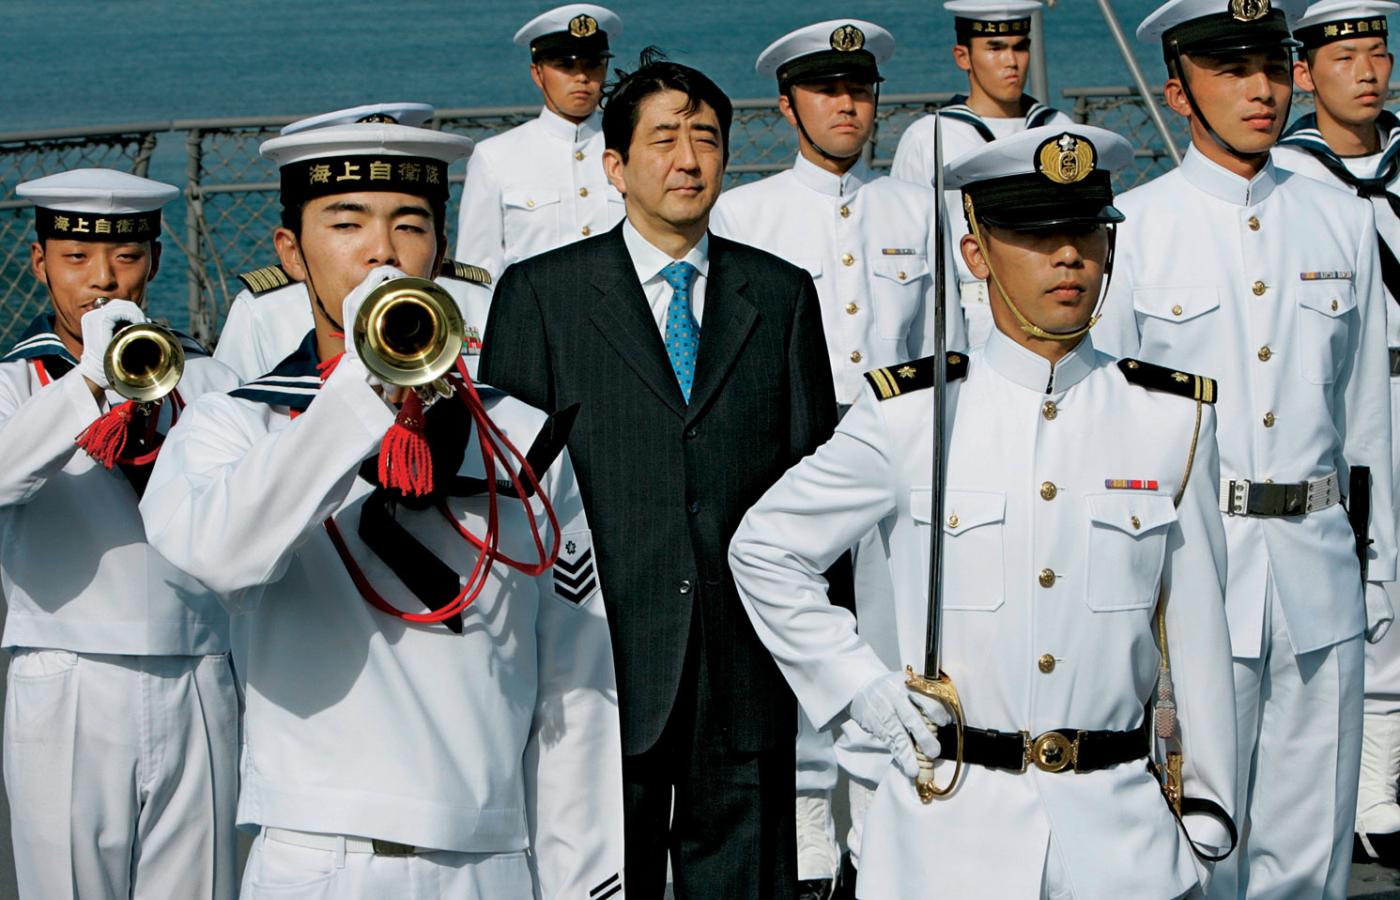 Konserwatywne kręgi w Japonii, popierające premiera i domagające się budowy przeciwwagi dla rosnących Chin, są zachwycone.